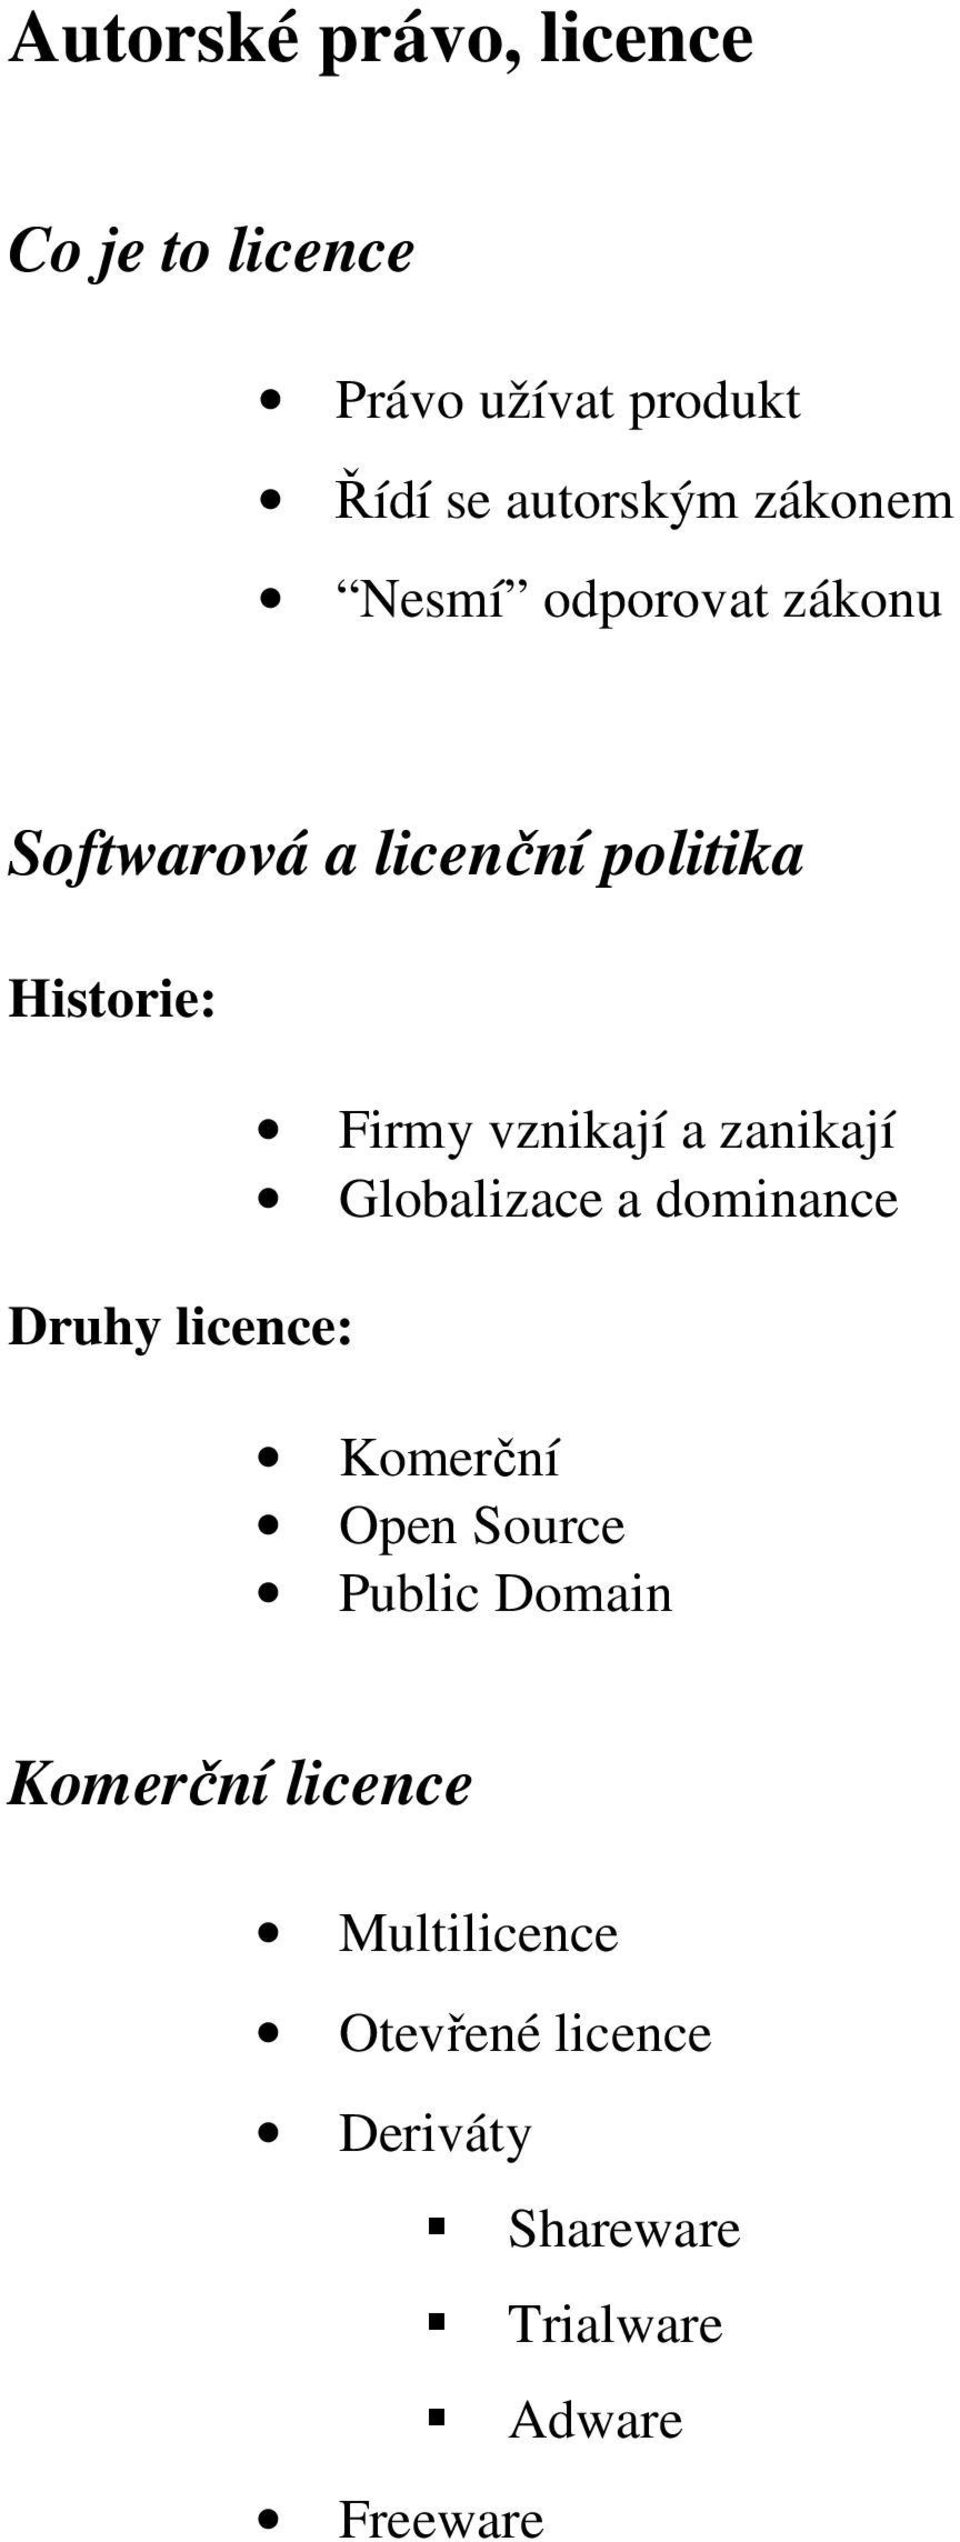 licence: Firmy vznikají a zanikají Globalizace a dominance Komerční Open Source